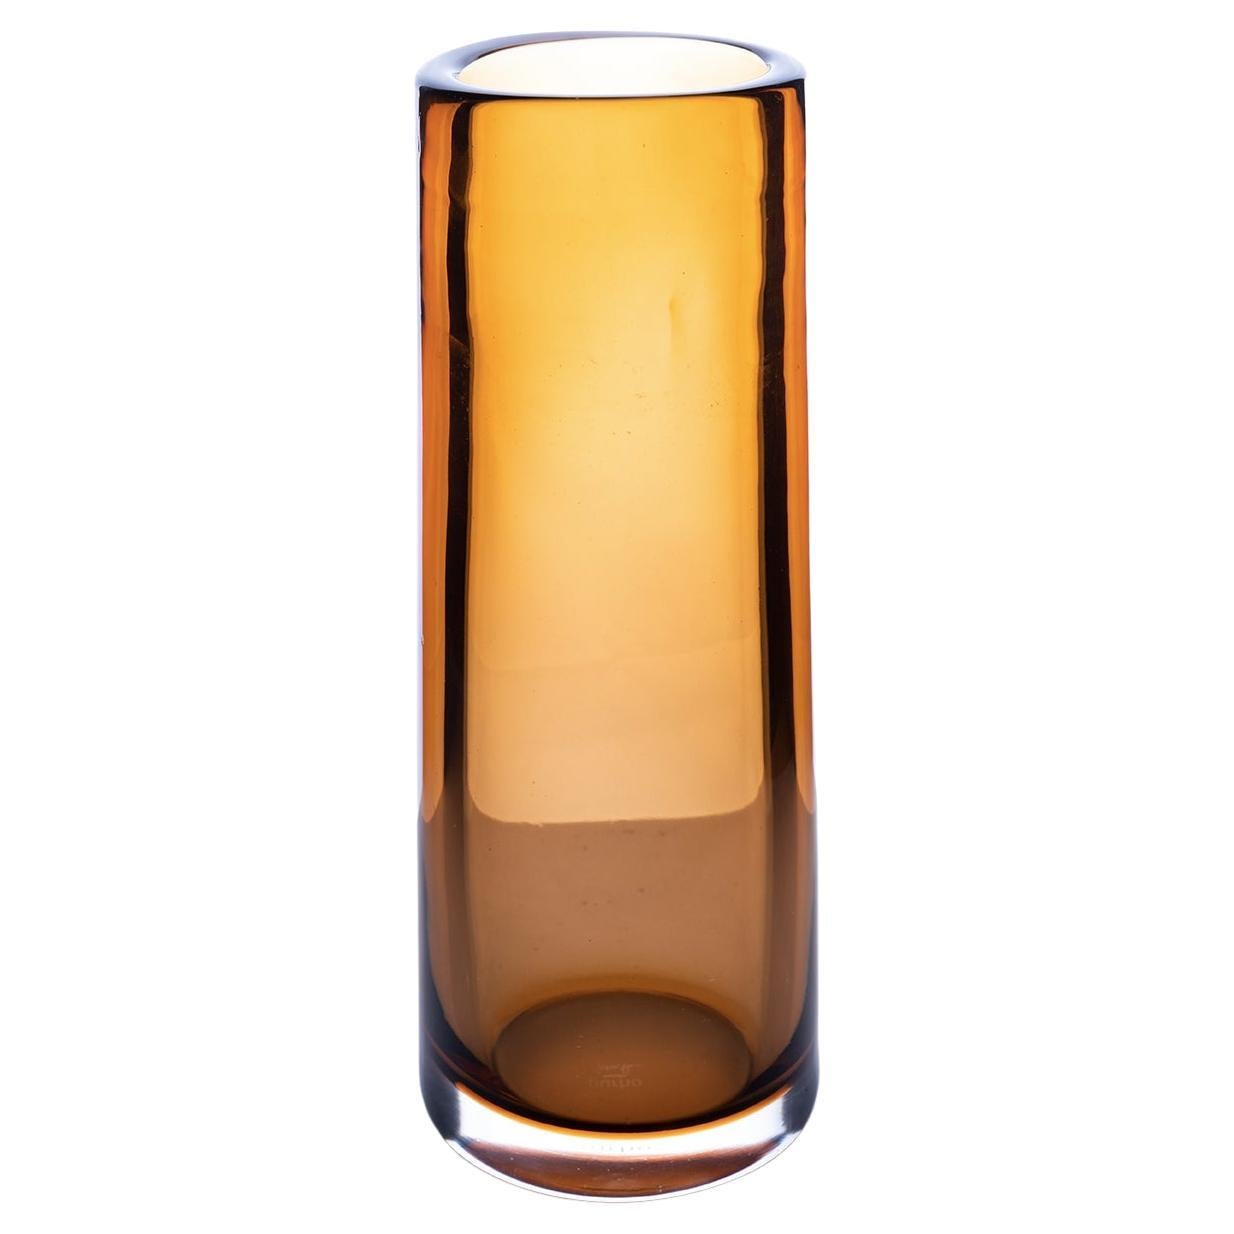 Grand vase cylindrique brillant en verre de Murano Federico Peri du 21ème siècle, couleur miel